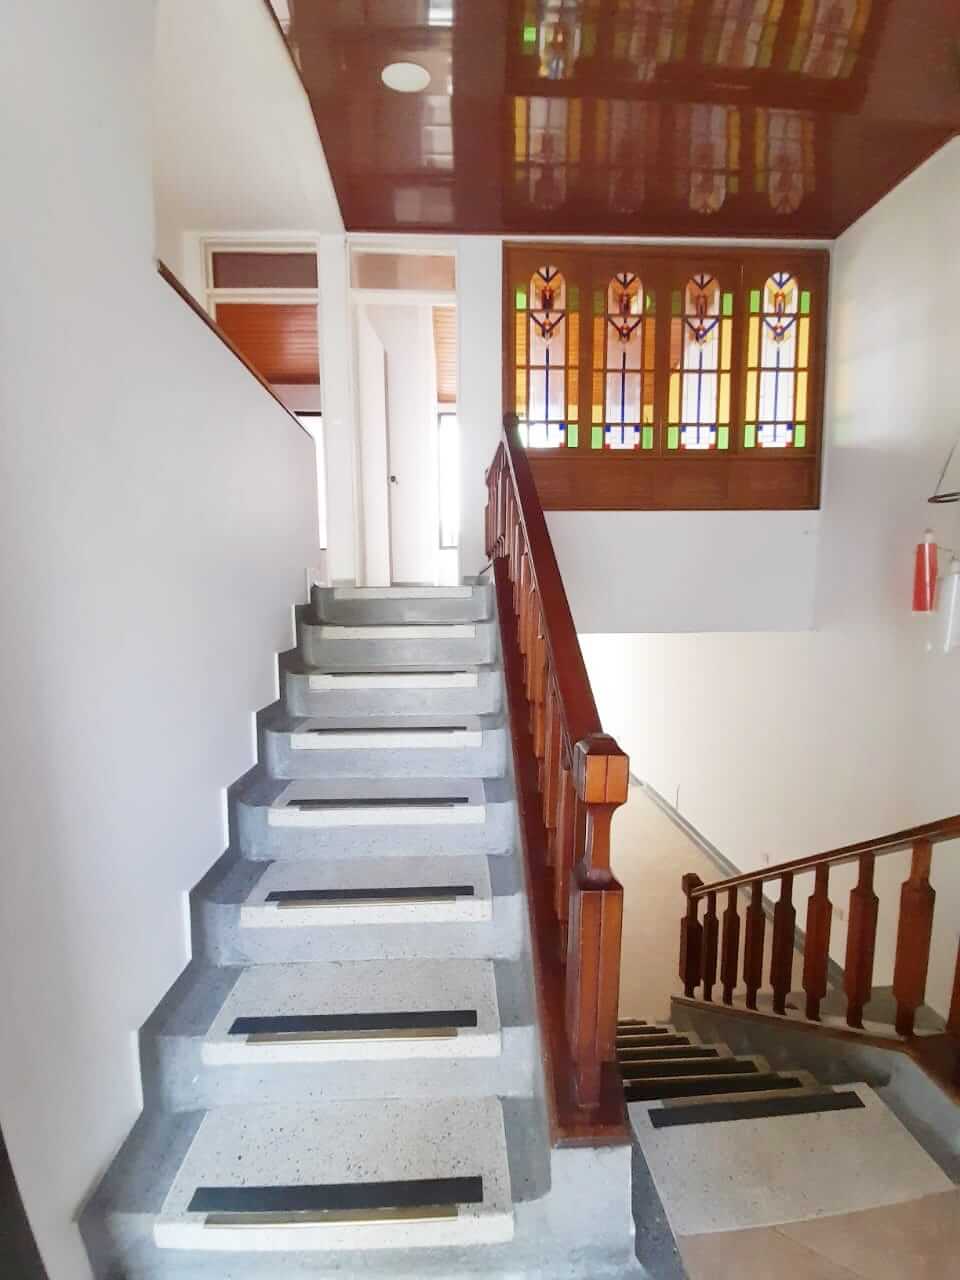 Casa-en-renta-en-arauca-barrio-cristo-rey-escaleras-segundopiso